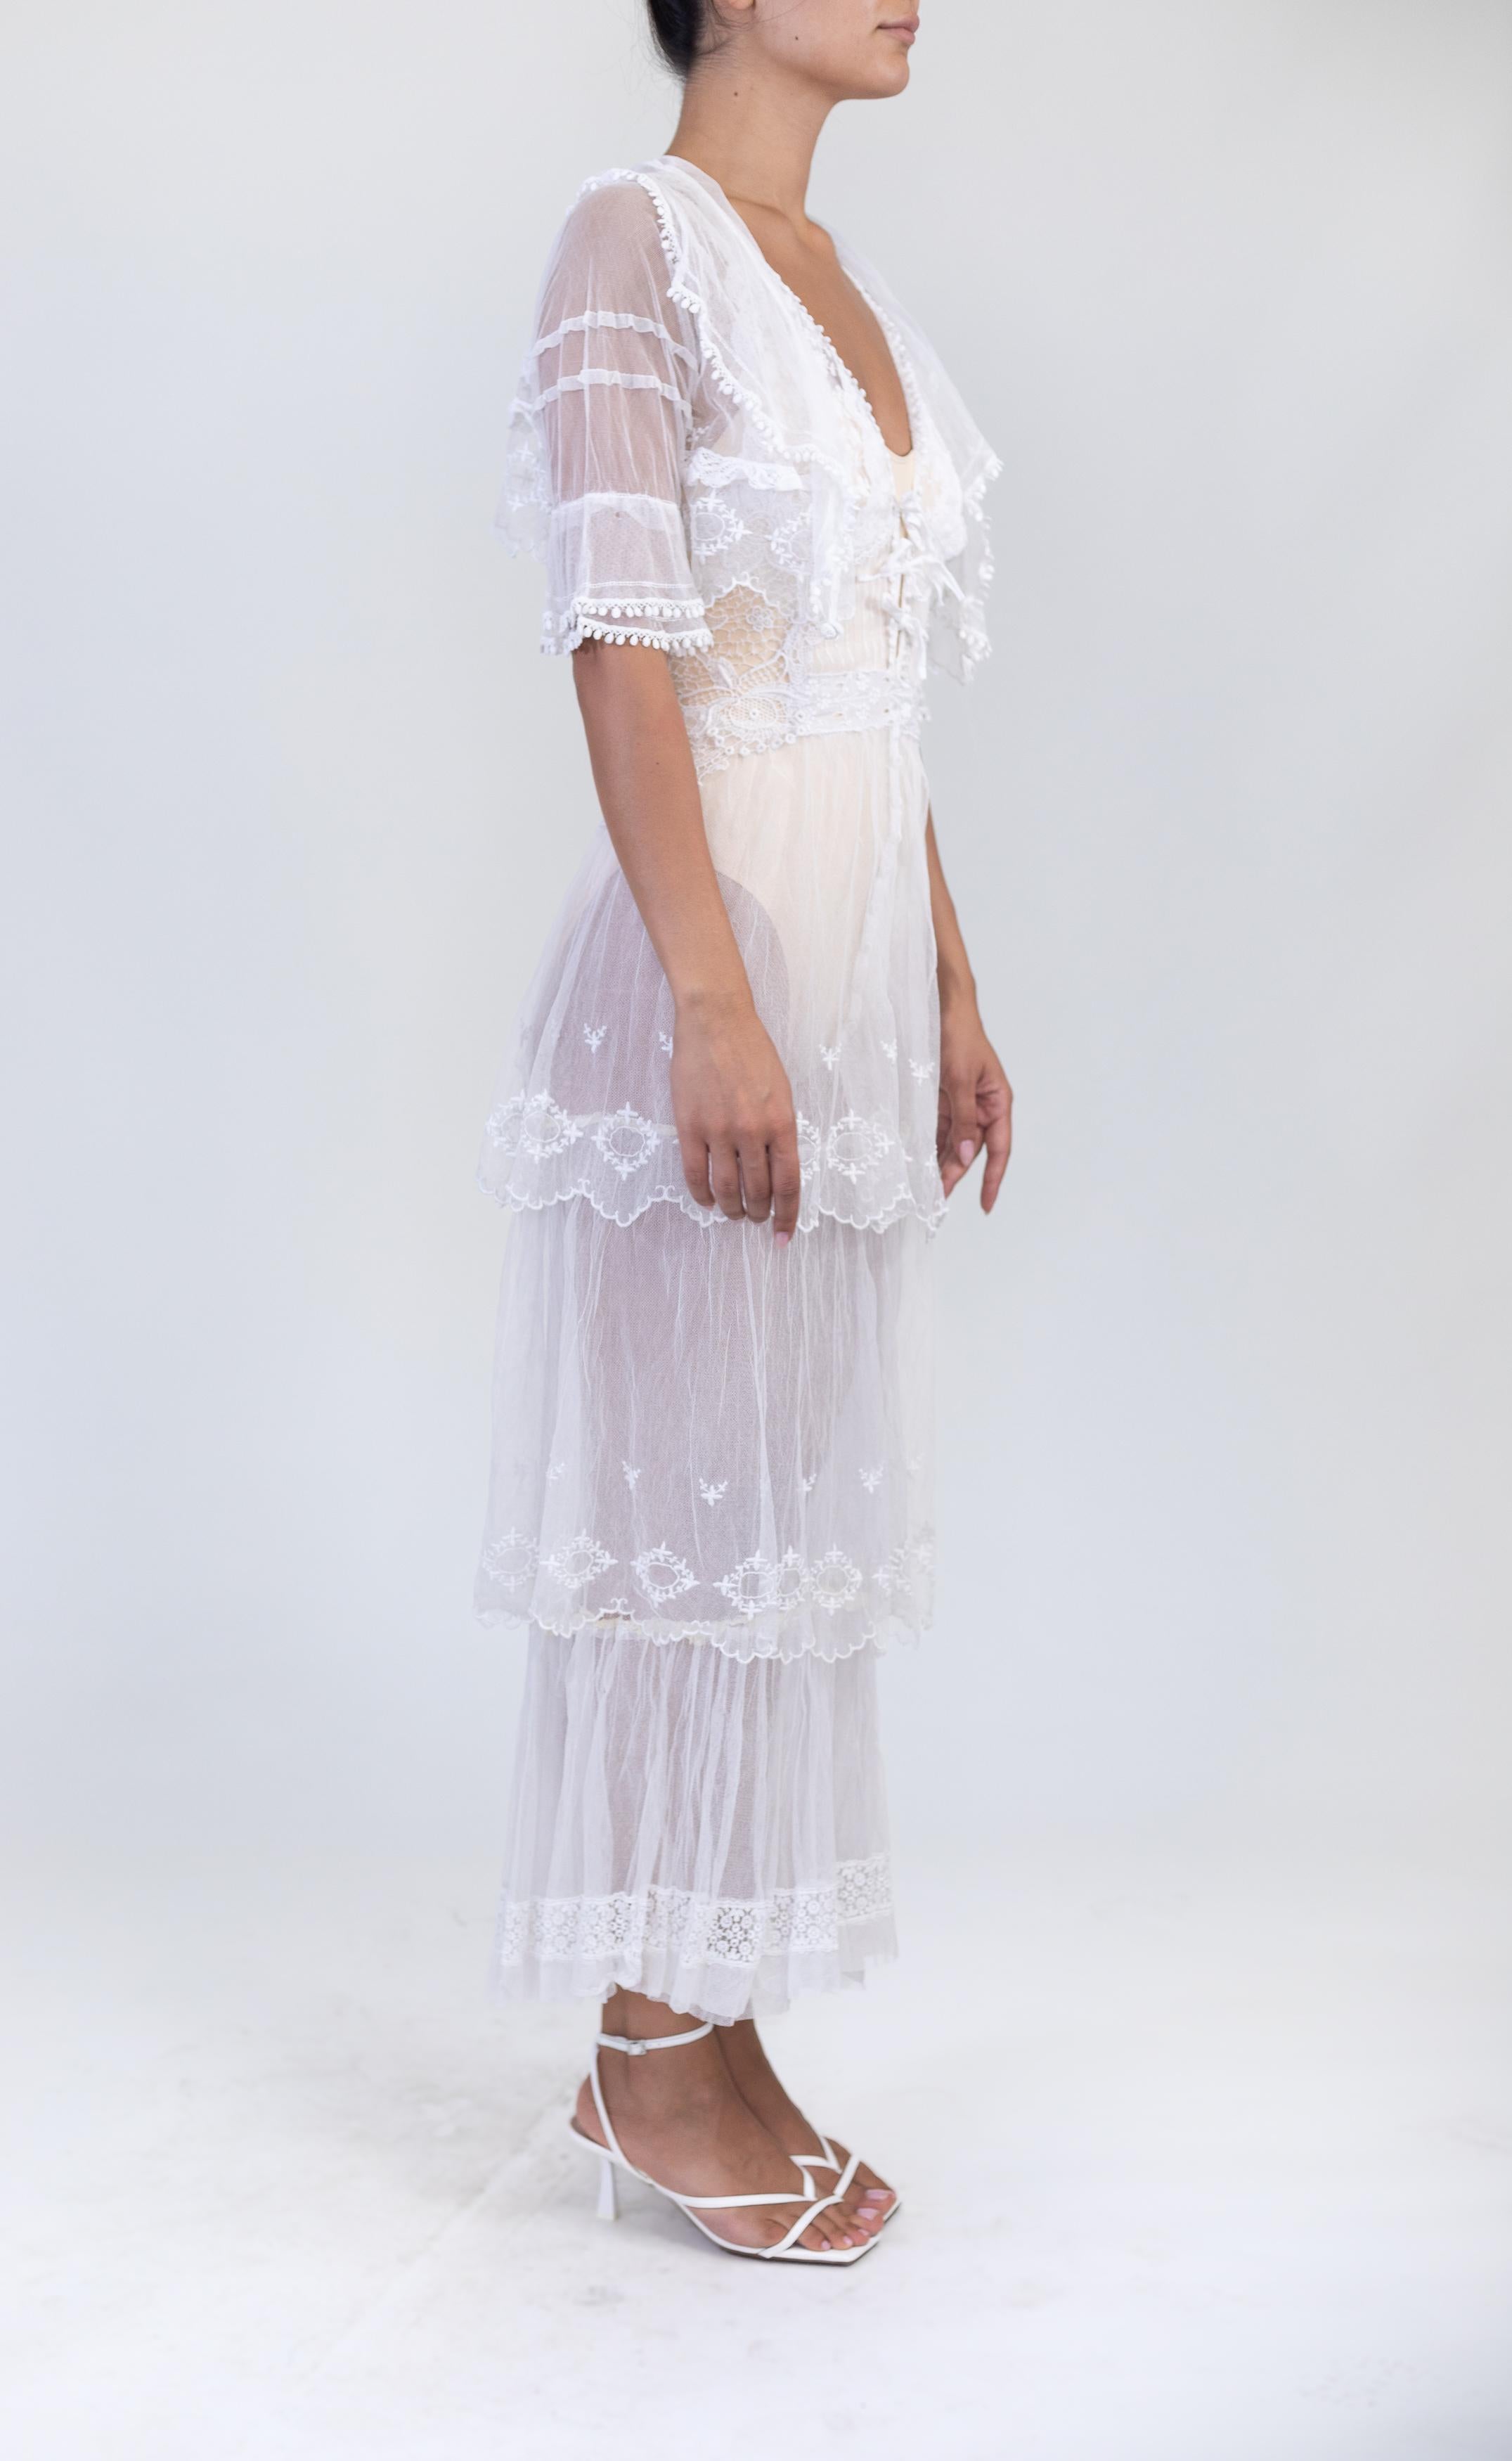 Morphew Atelier Weiß rückenfrei Bio-Baumwolle bestickt Tüll viktorianische Spitze Kleid mit Jacke